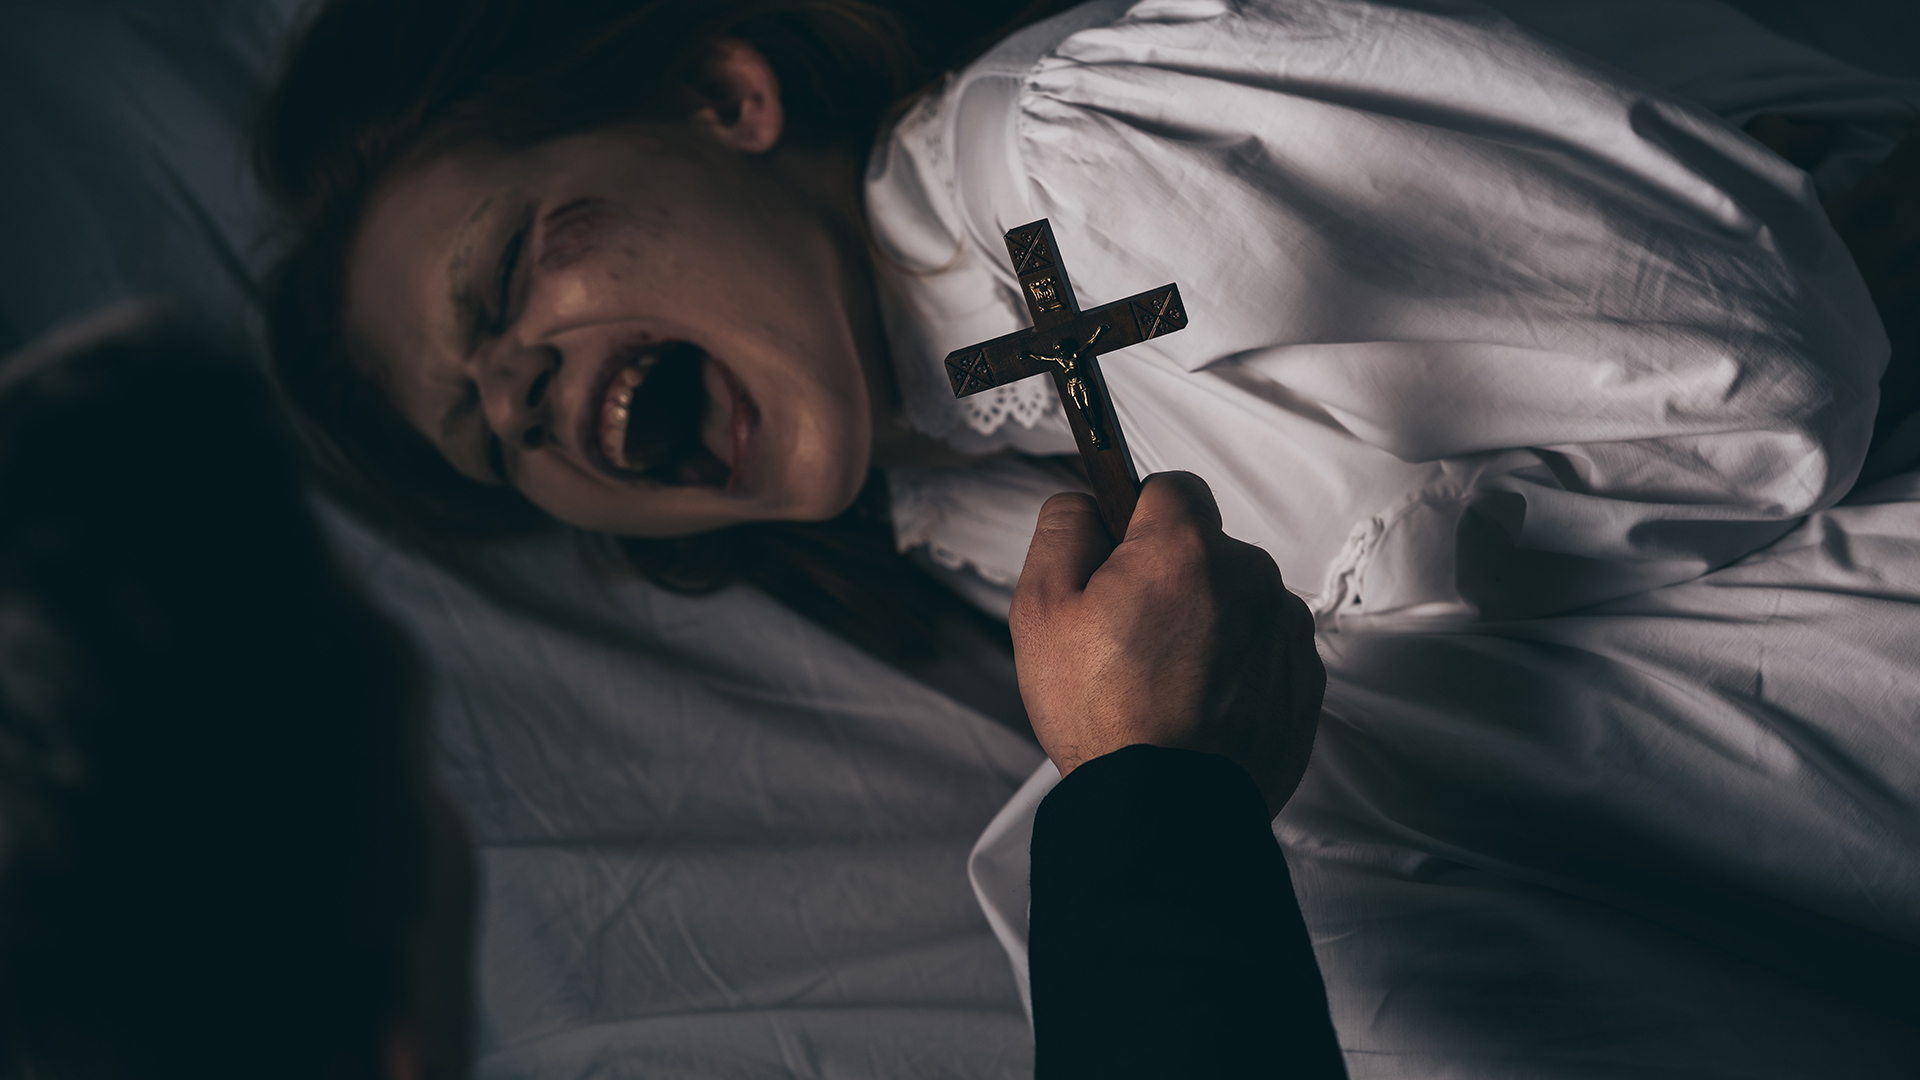 Naozaj bola posadnutá démonmi? 23-ročná Anneliese Michel zomrela počas exorcizmu